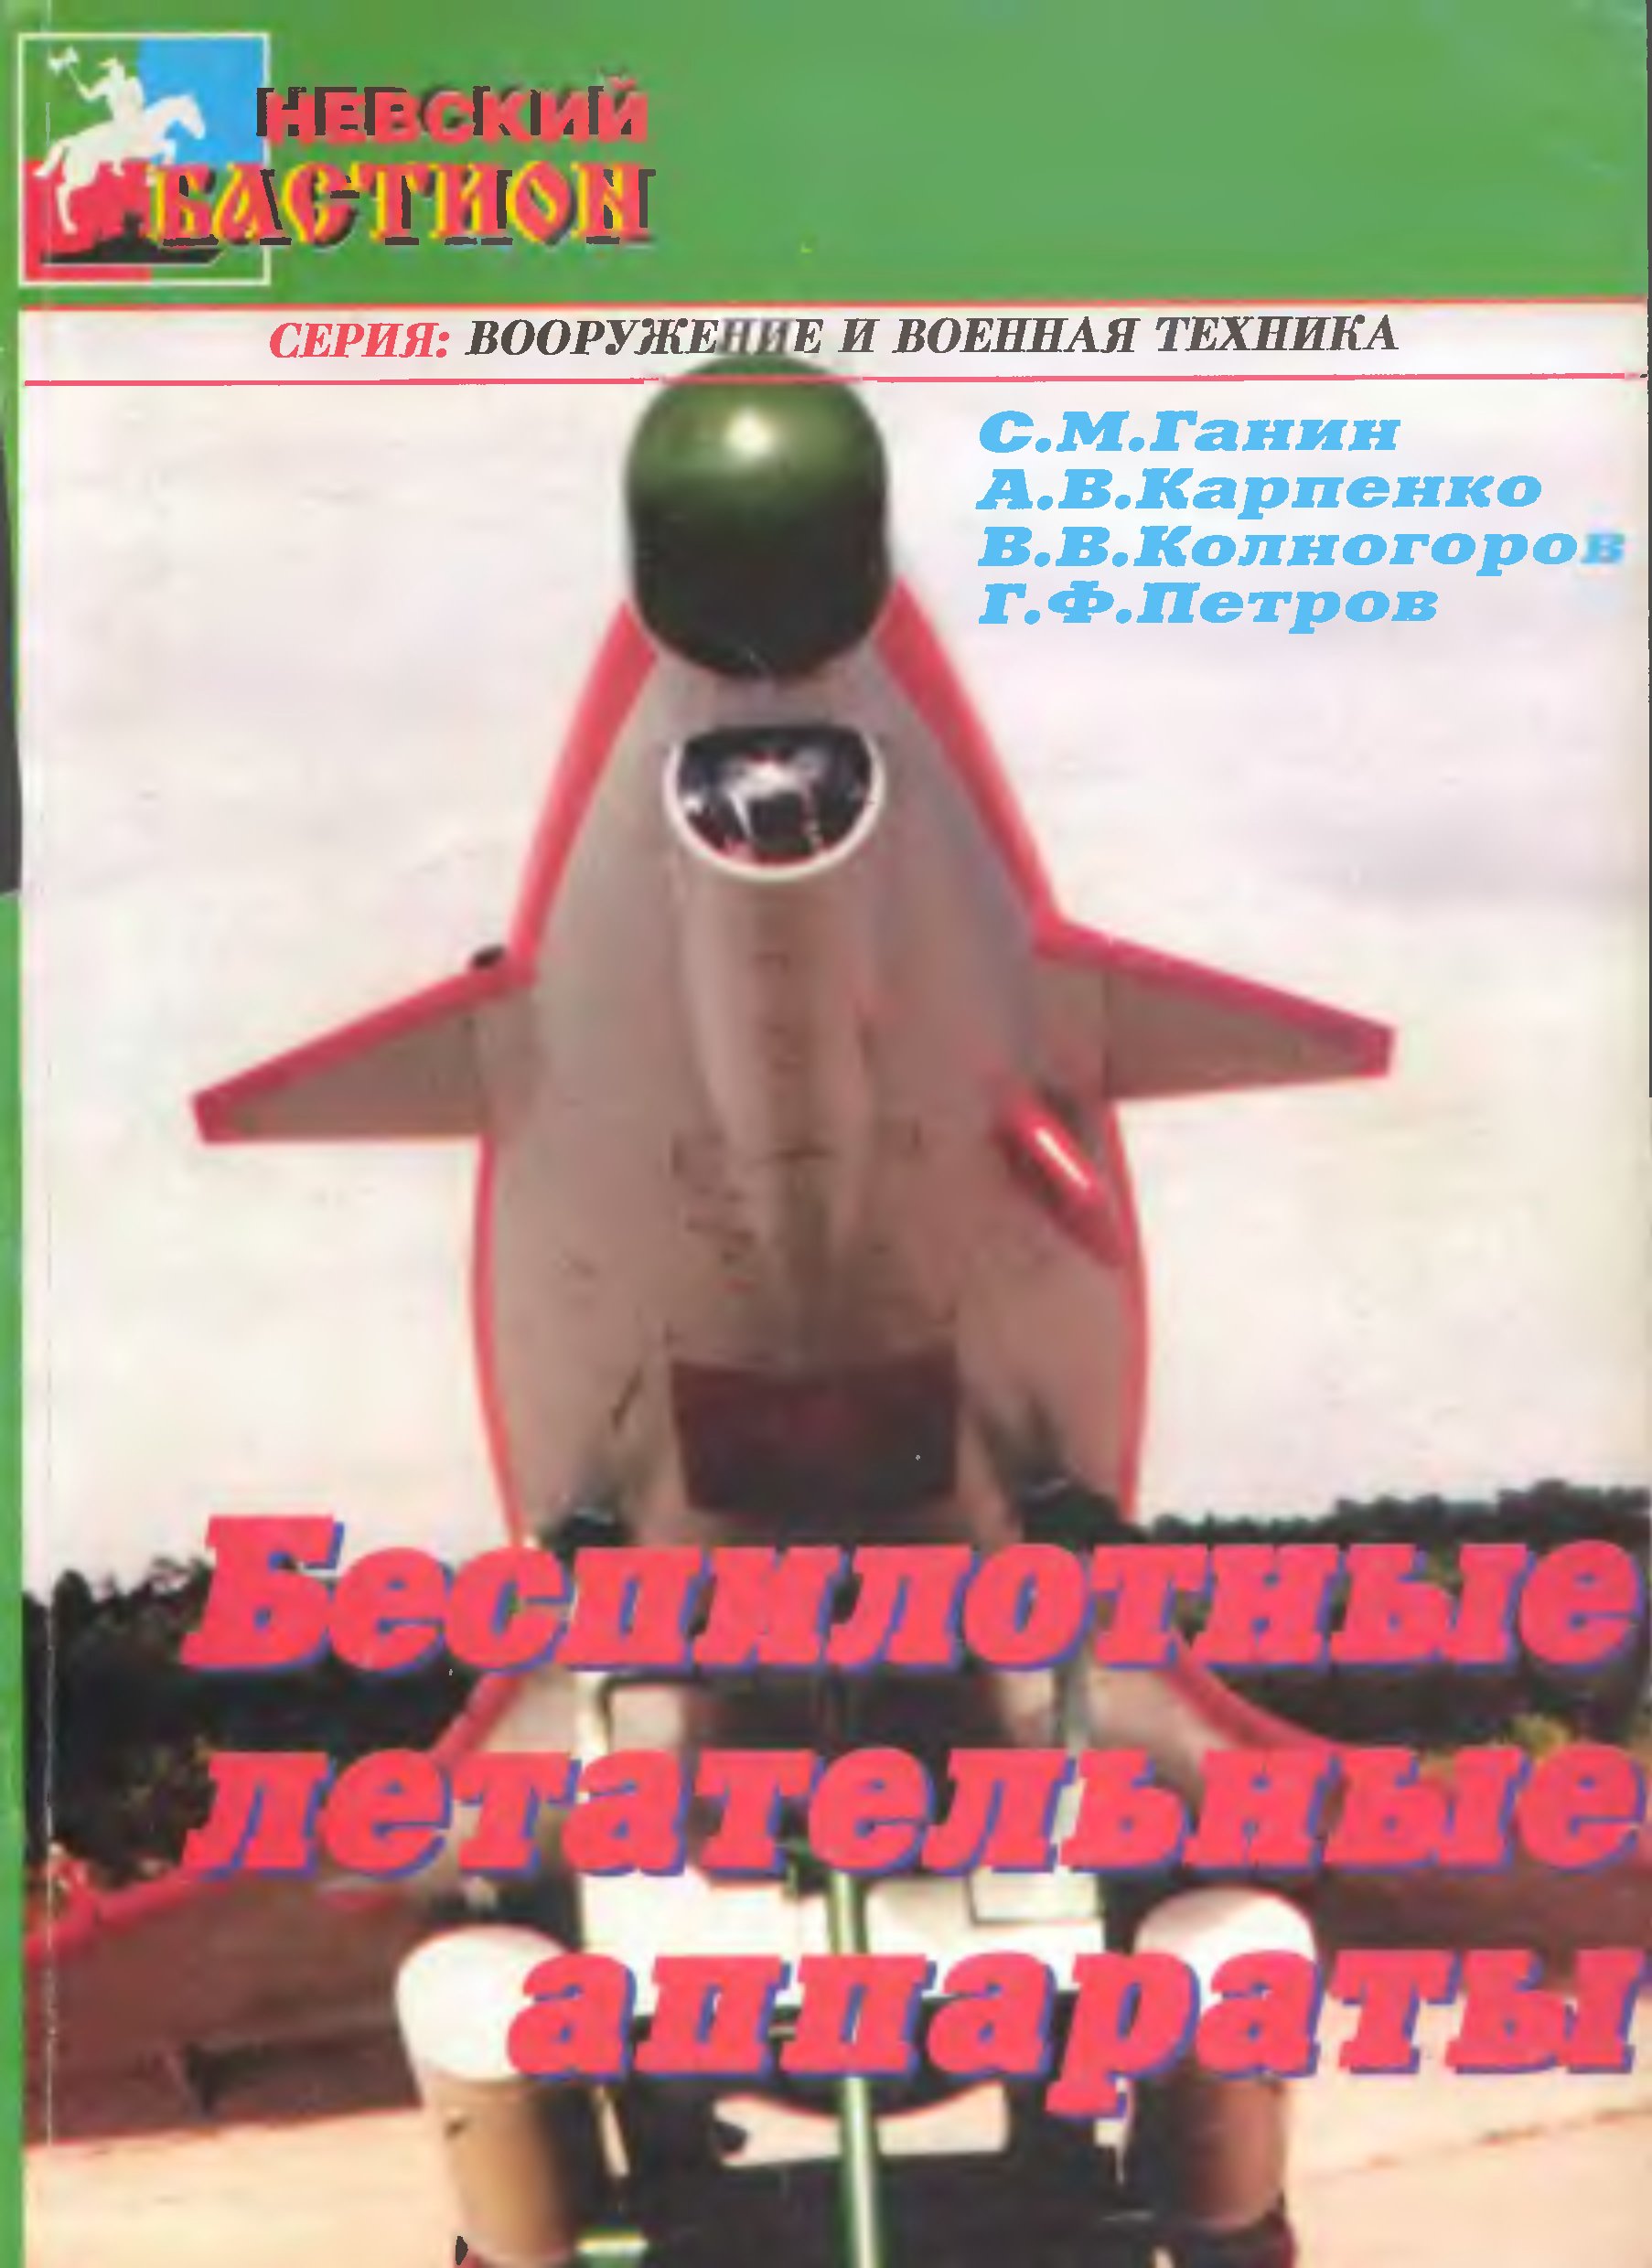 Обложка книги Беспилотные летательные аппараты (Ганин С.М., Карпенко А.В., Колногоров В.В., Петров Г.Ф.)